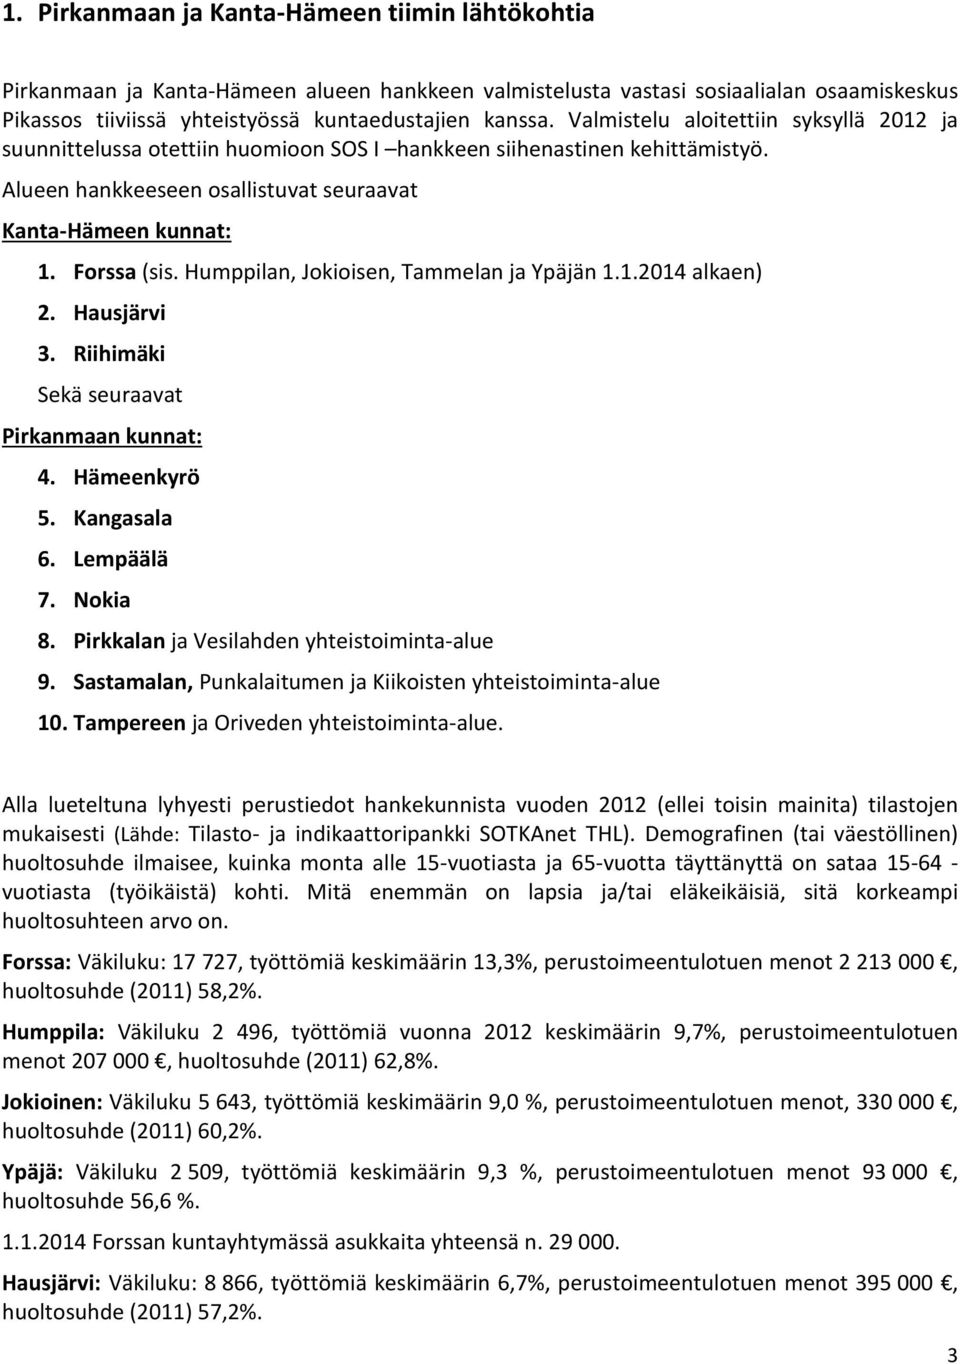 Humppilan, Jokioisen, Tammelan ja Ypäjän 1.1.2014 alkaen) 2. Hausjärvi 3. Riihimäki Sekä seuraavat Pirkanmaan kunnat: 4. Hämeenkyrö 5. Kangasala 6. Lempäälä 7. Nokia 8.